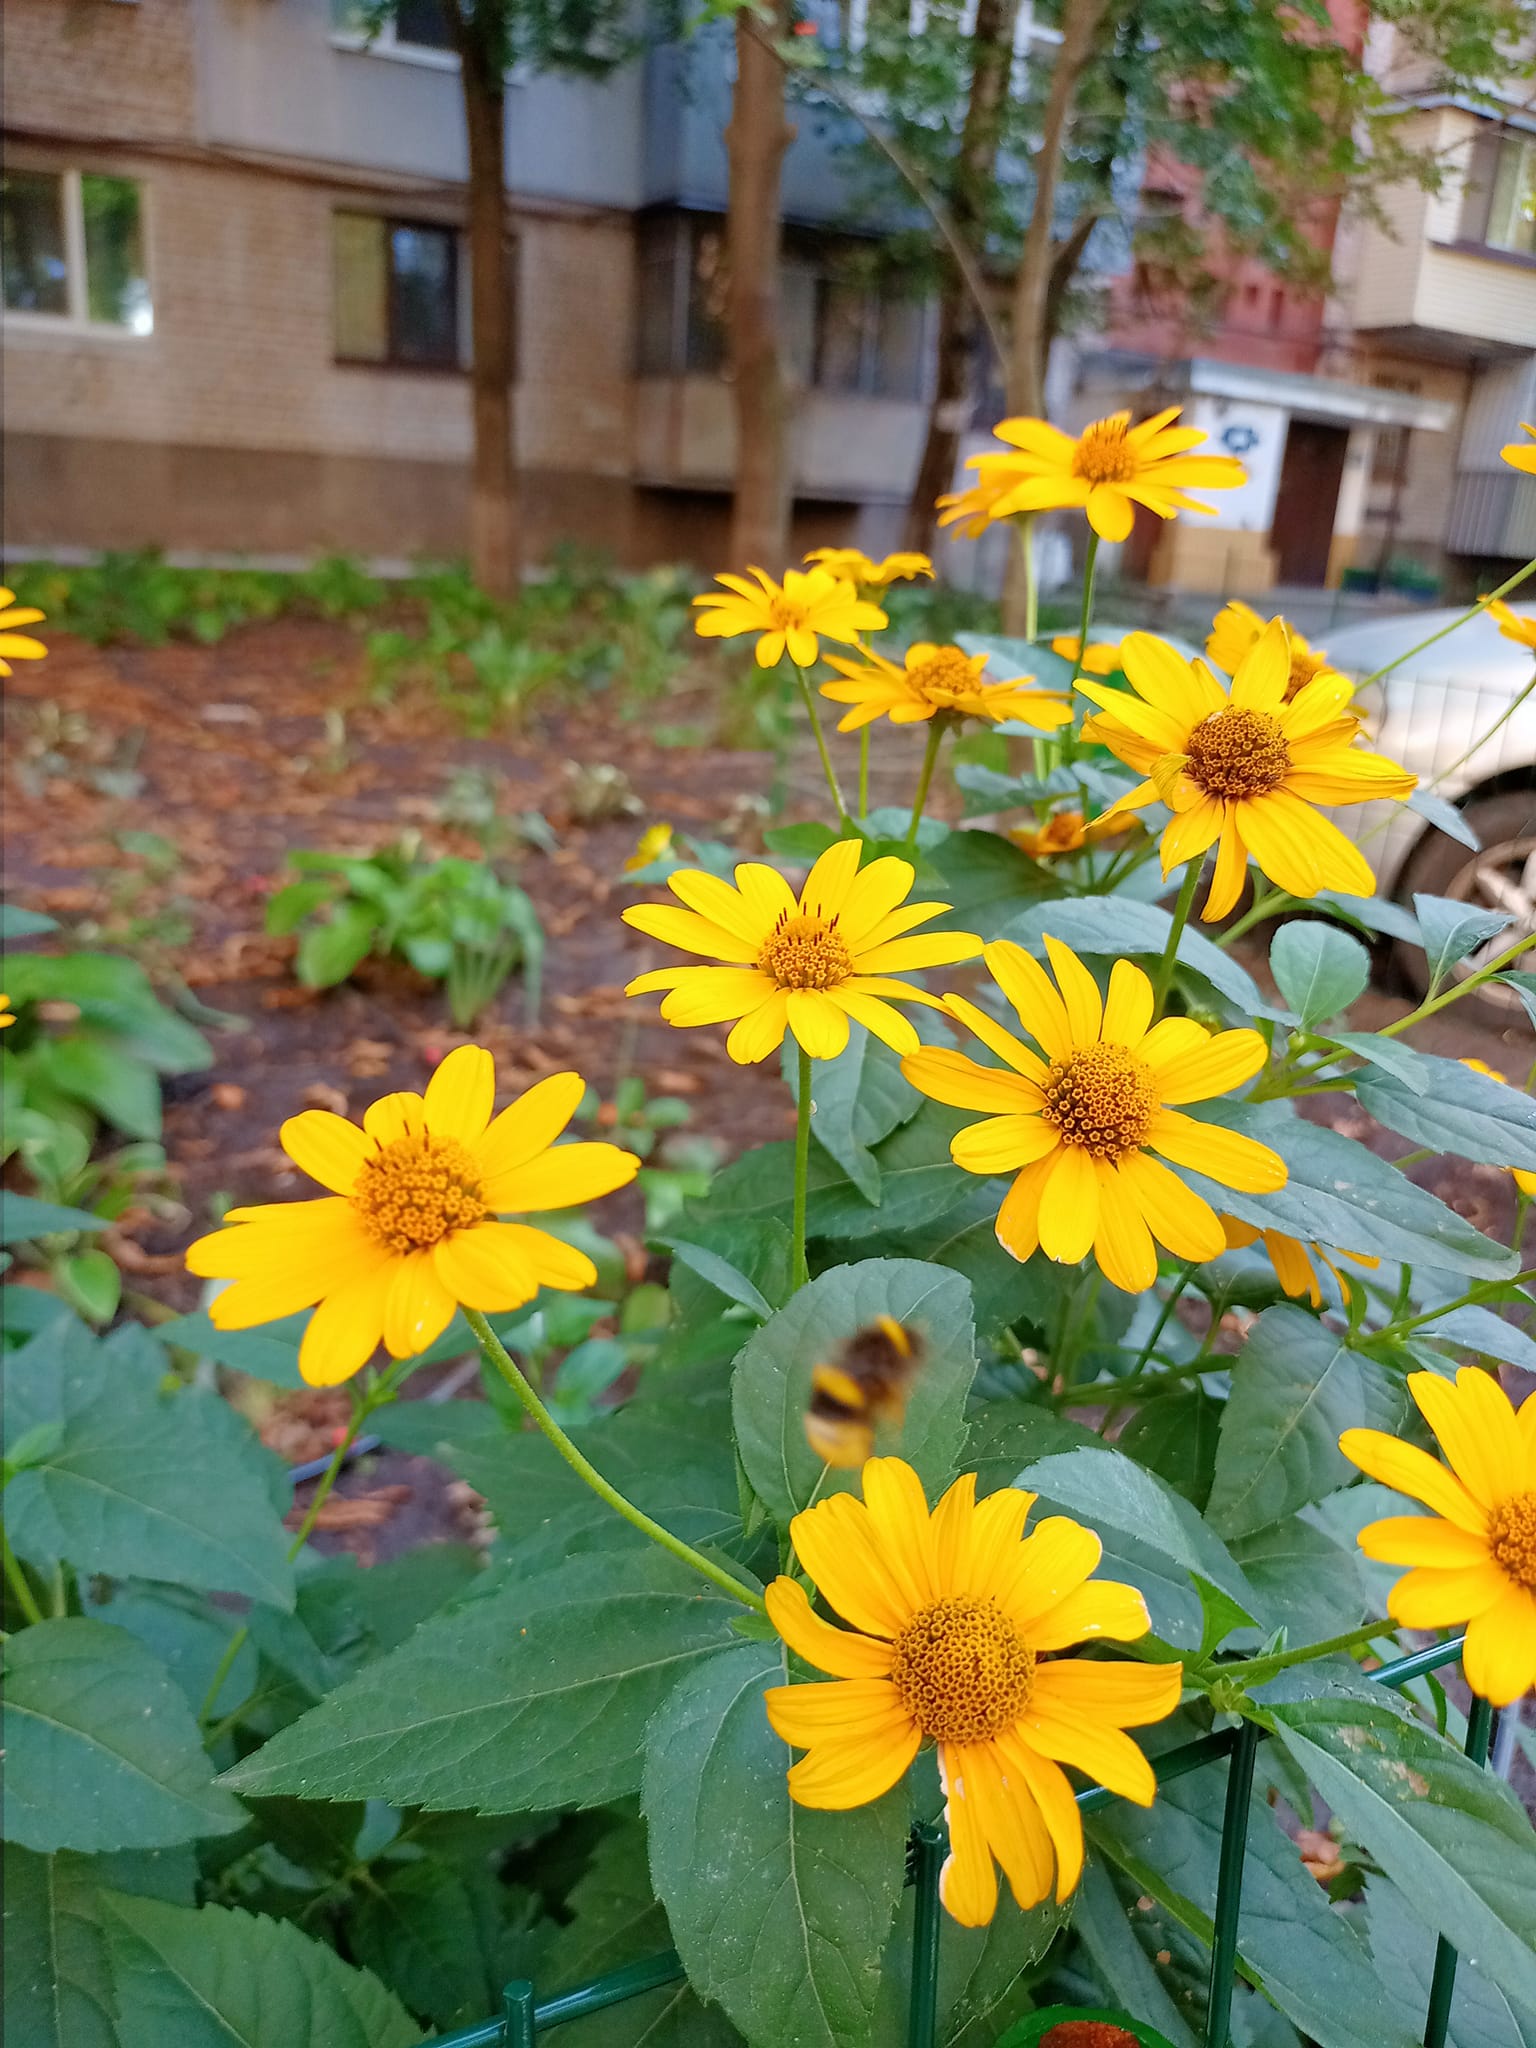 Новости Днепра про В Днепре местные жители создали возле своего дома зеленый оазис